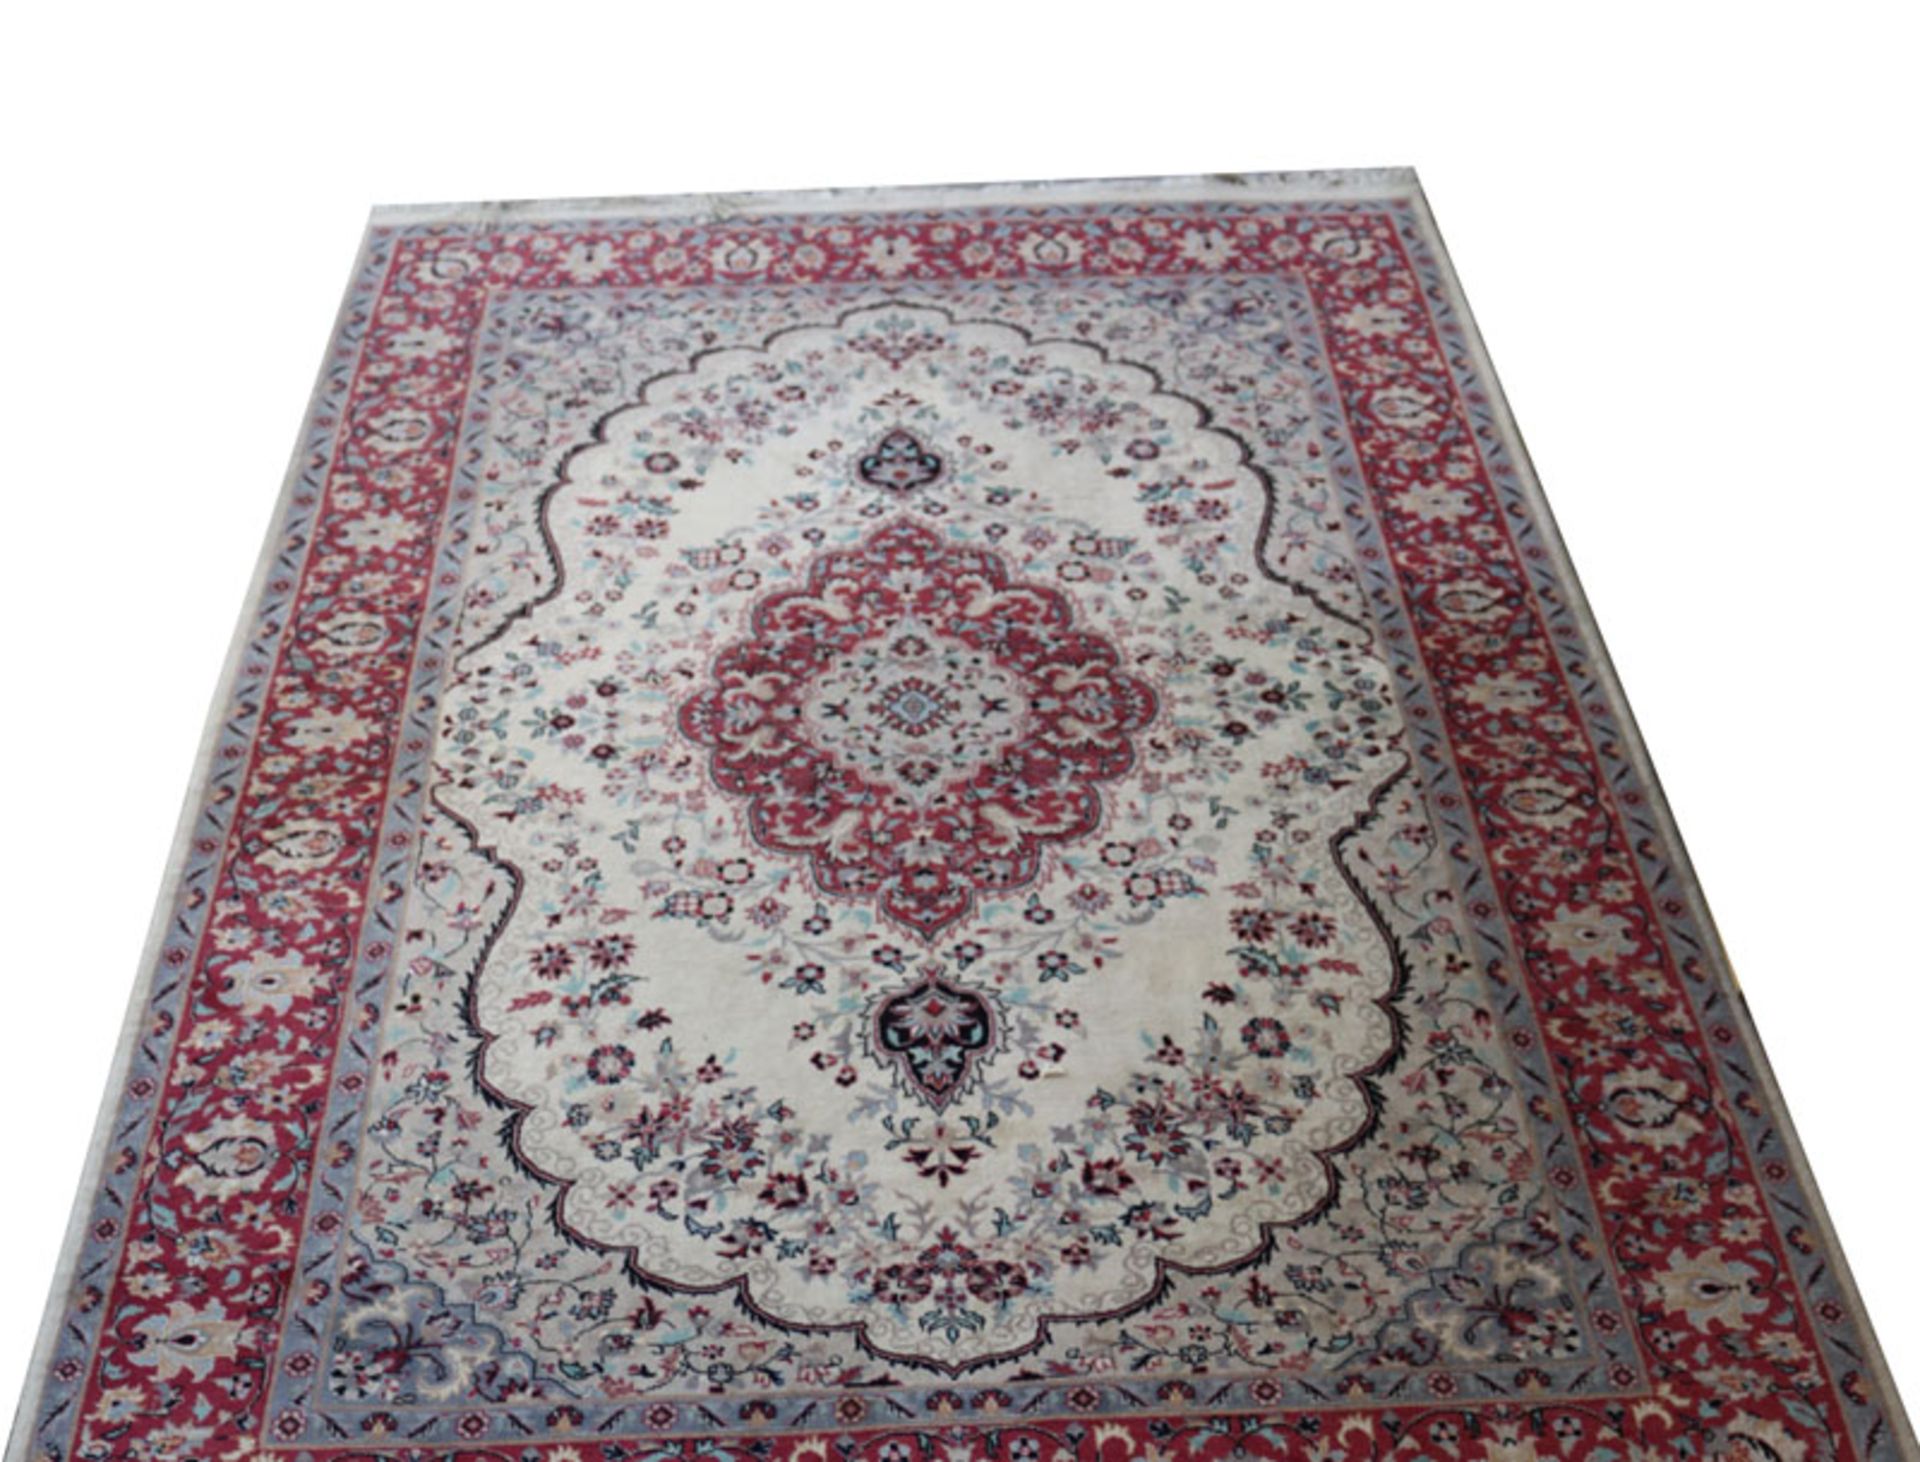 Teppich, Kirman, beige/rot/bunt, Gebrauchsspuren, teils fleckig, 223 cm x 140 cm